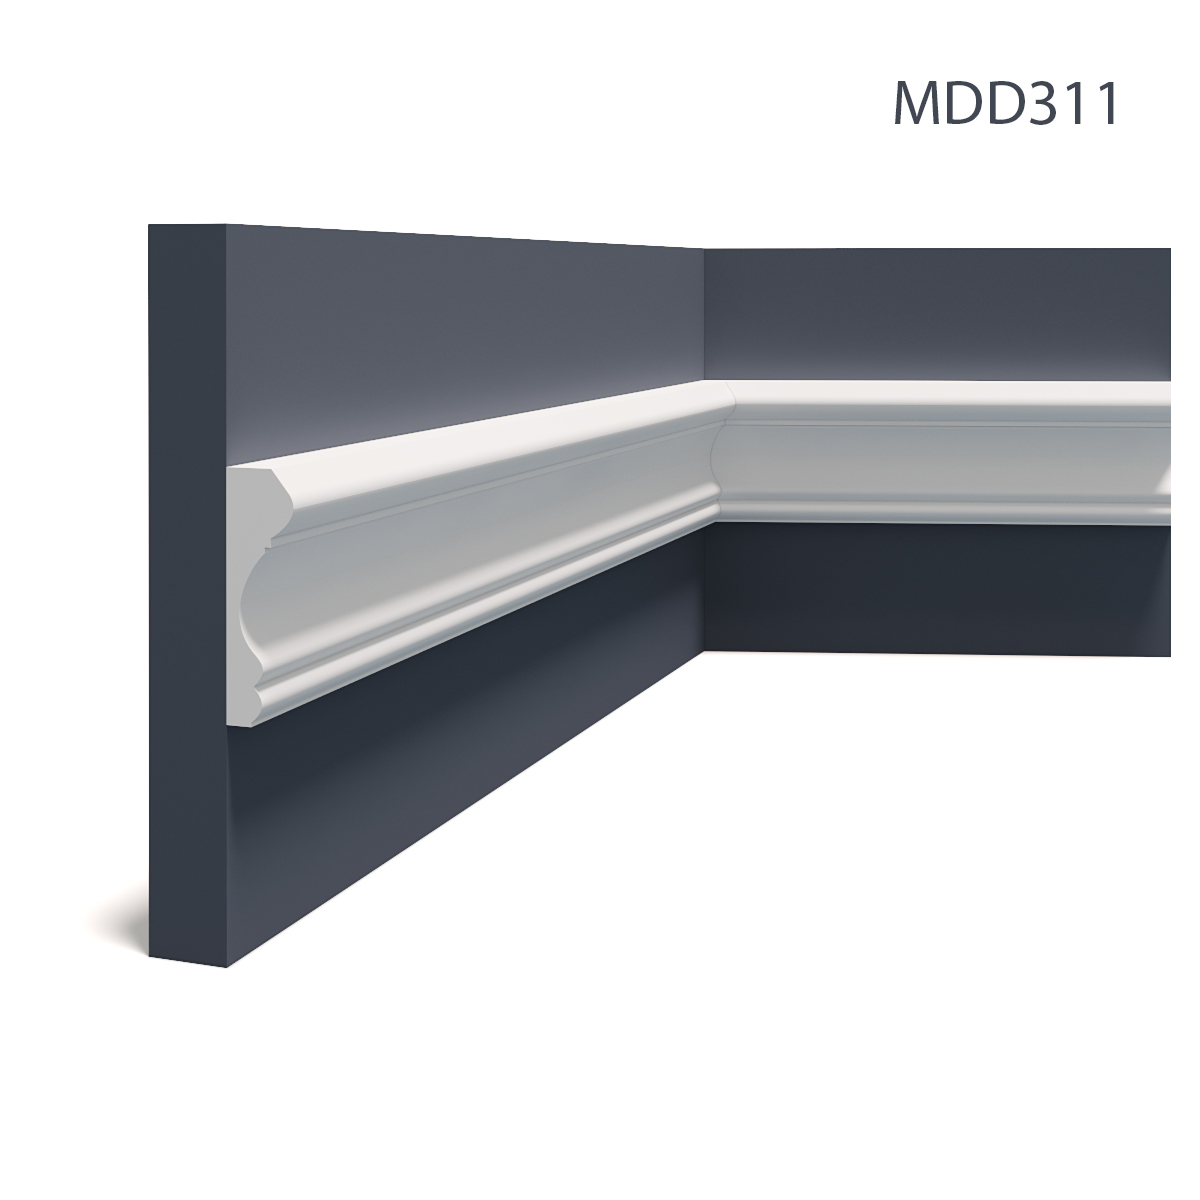 Brau decorativ flexibil MDD311F, 235 X 8.5 X 2.5 cm, Mardom Decor 2.5